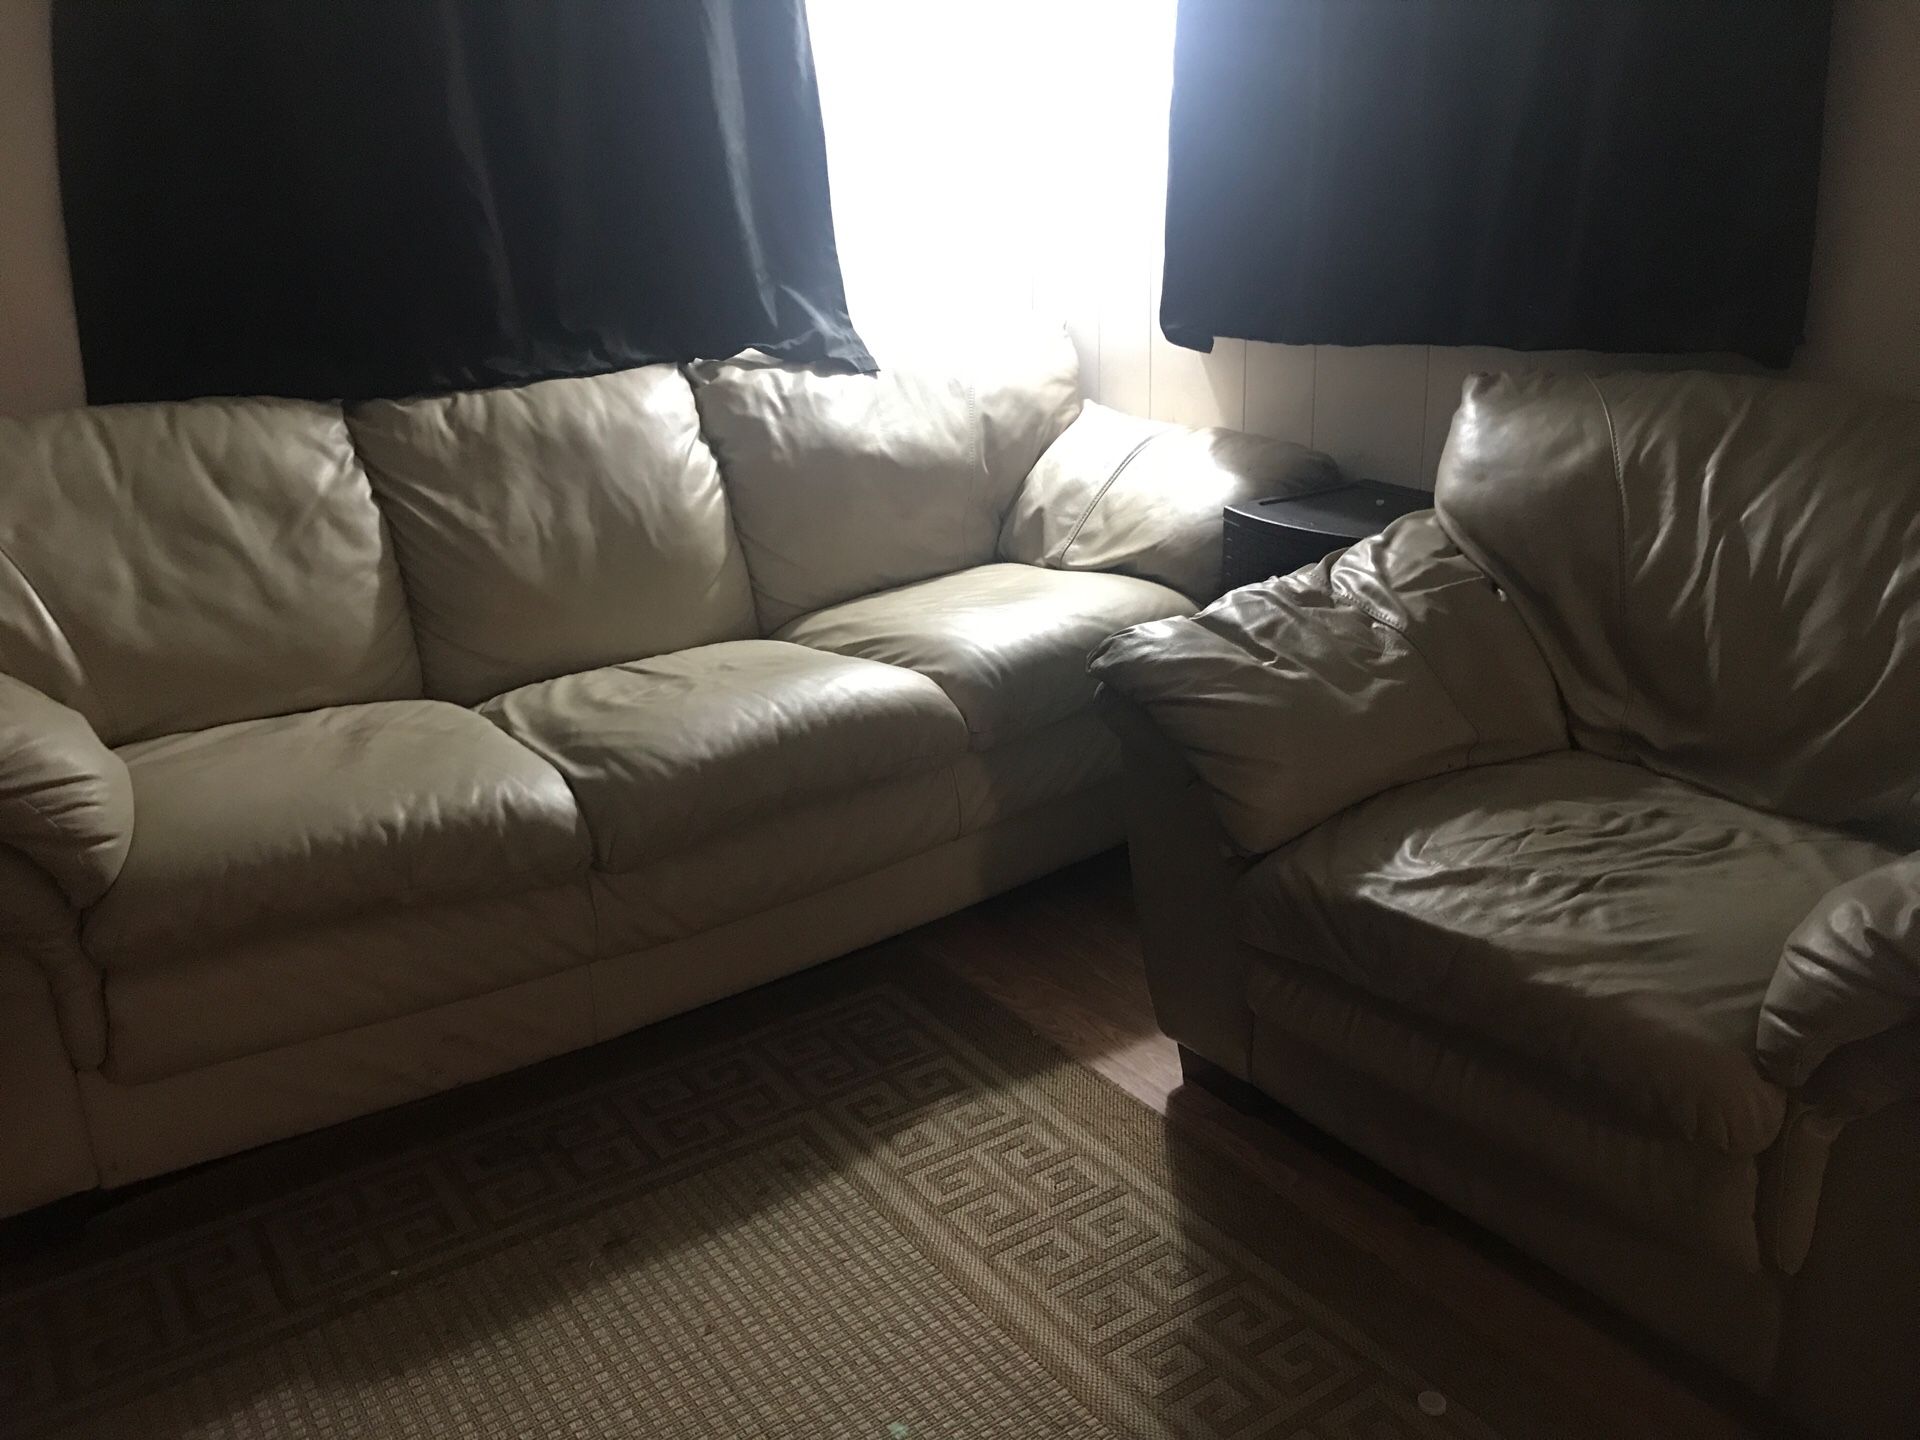 Sofa & chair